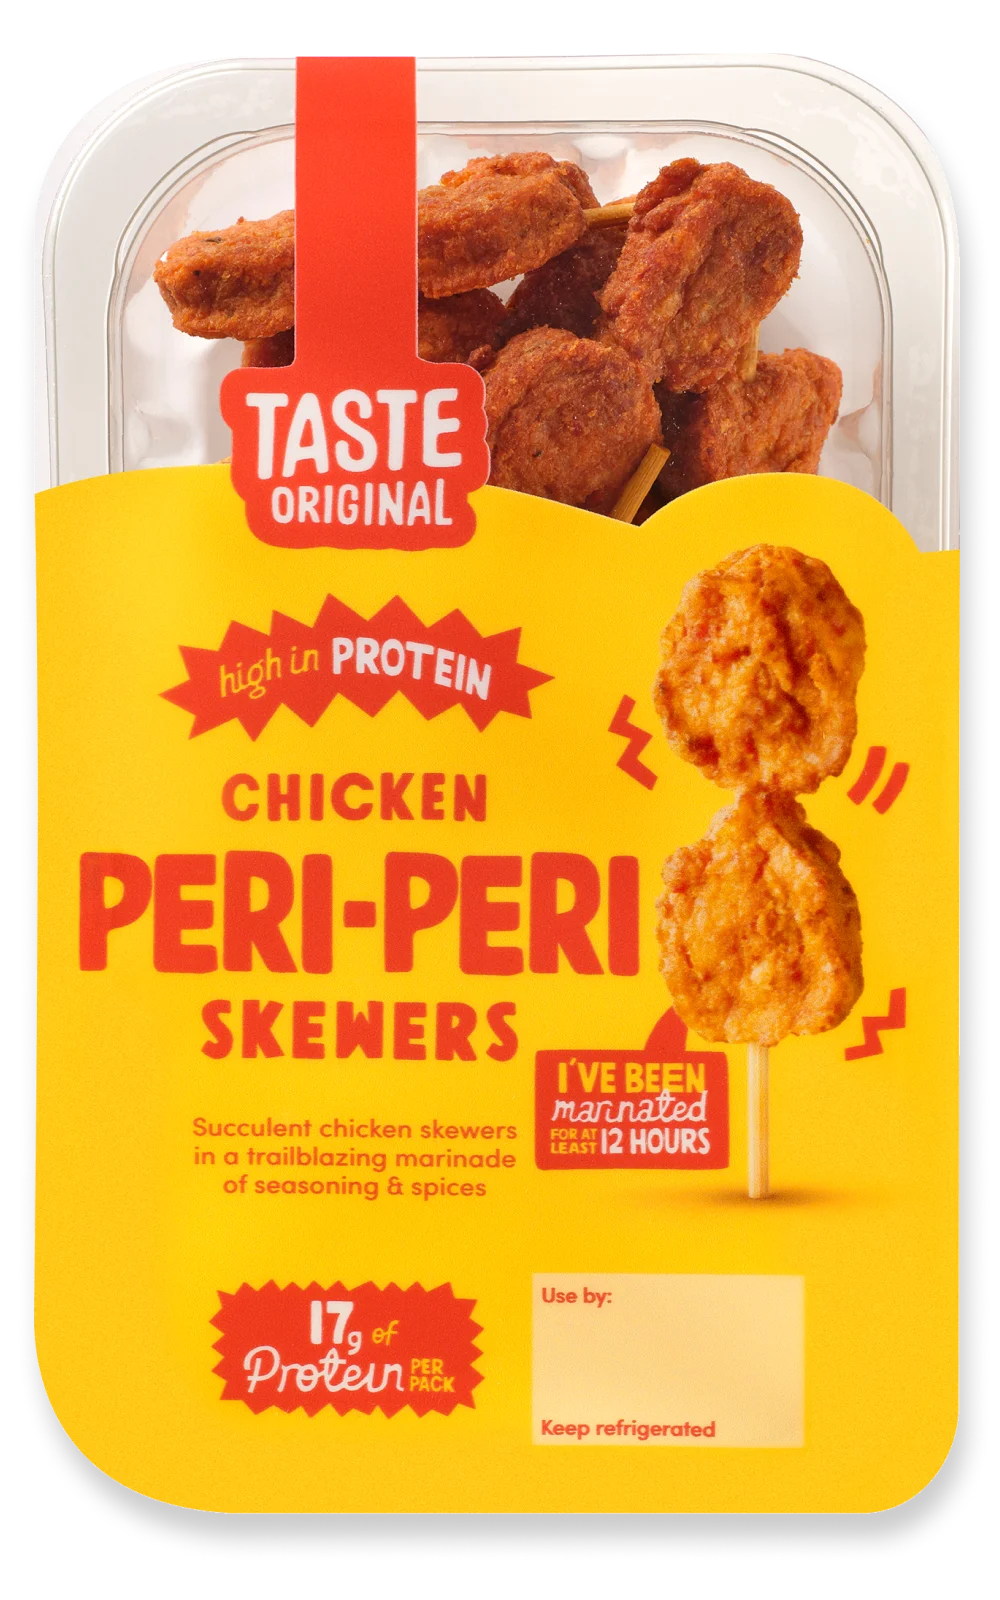 Taste Original Chicken Peri-Peri Skewers